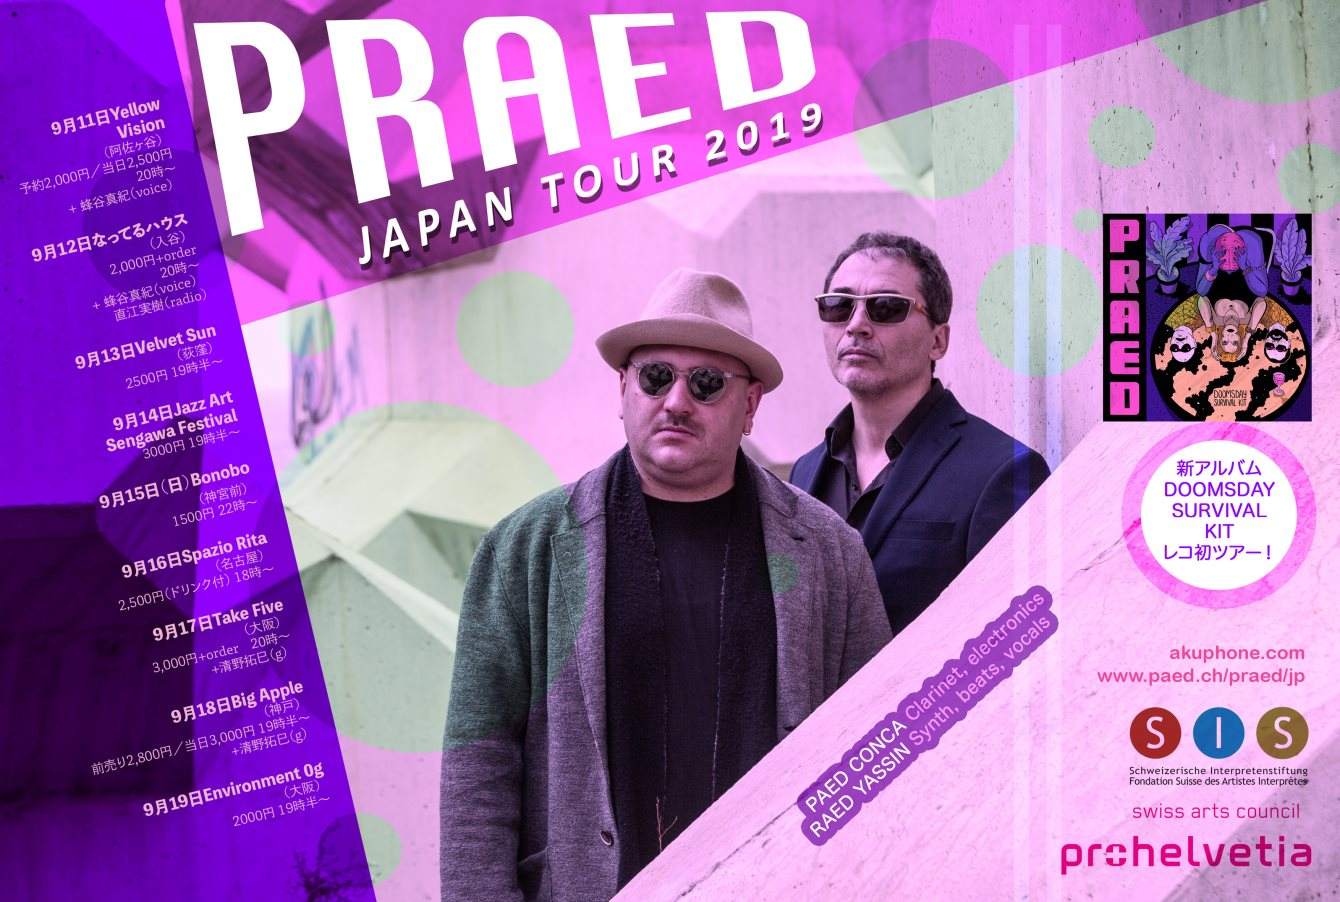 PRAED Japan Tour 2019 - Página frontal